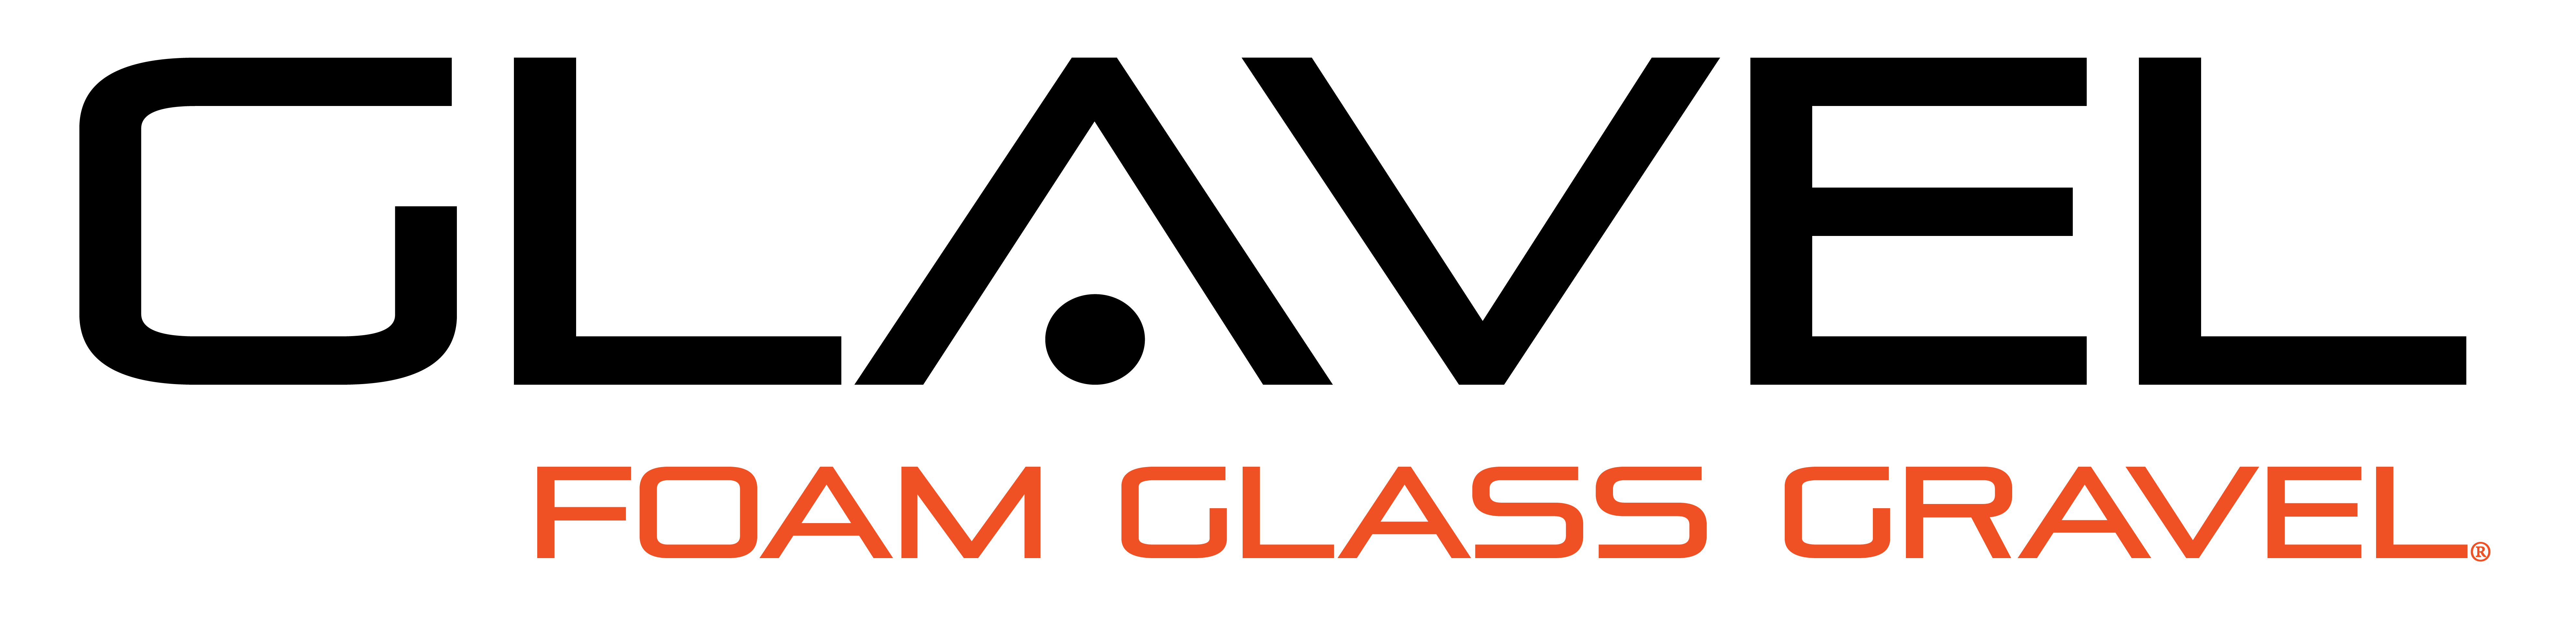 Glavel Logo